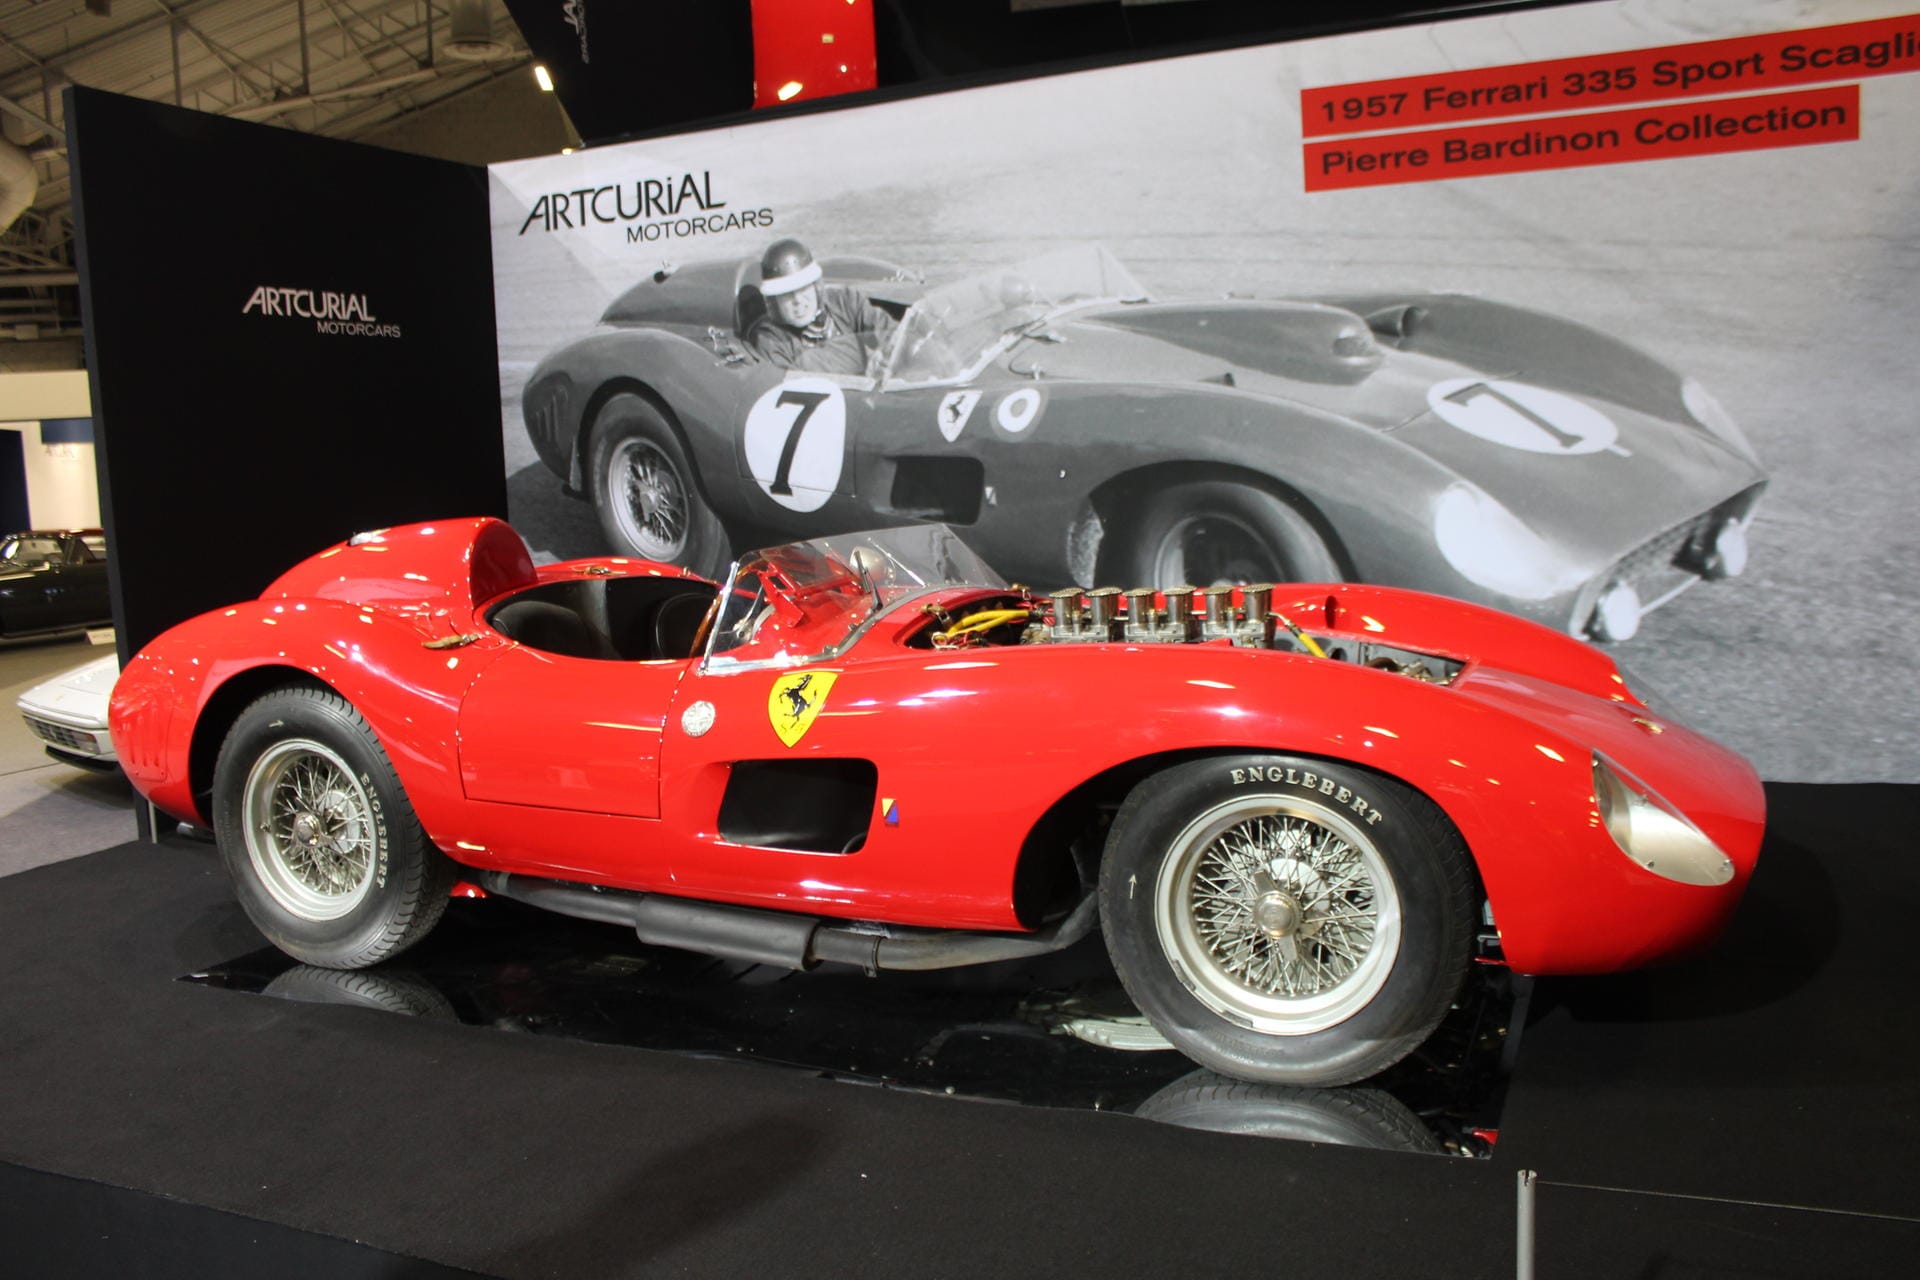 Der Ferrari 335 Sport ist erst das zweite Auto überhaupt, das die 30-Millionen-Dollar-Marke durchbrochen hat. Die Versteigerung dieses Boliden durch das Auktionshaus Artcurial in Paris war einer der Höhepunkte des Jahres.